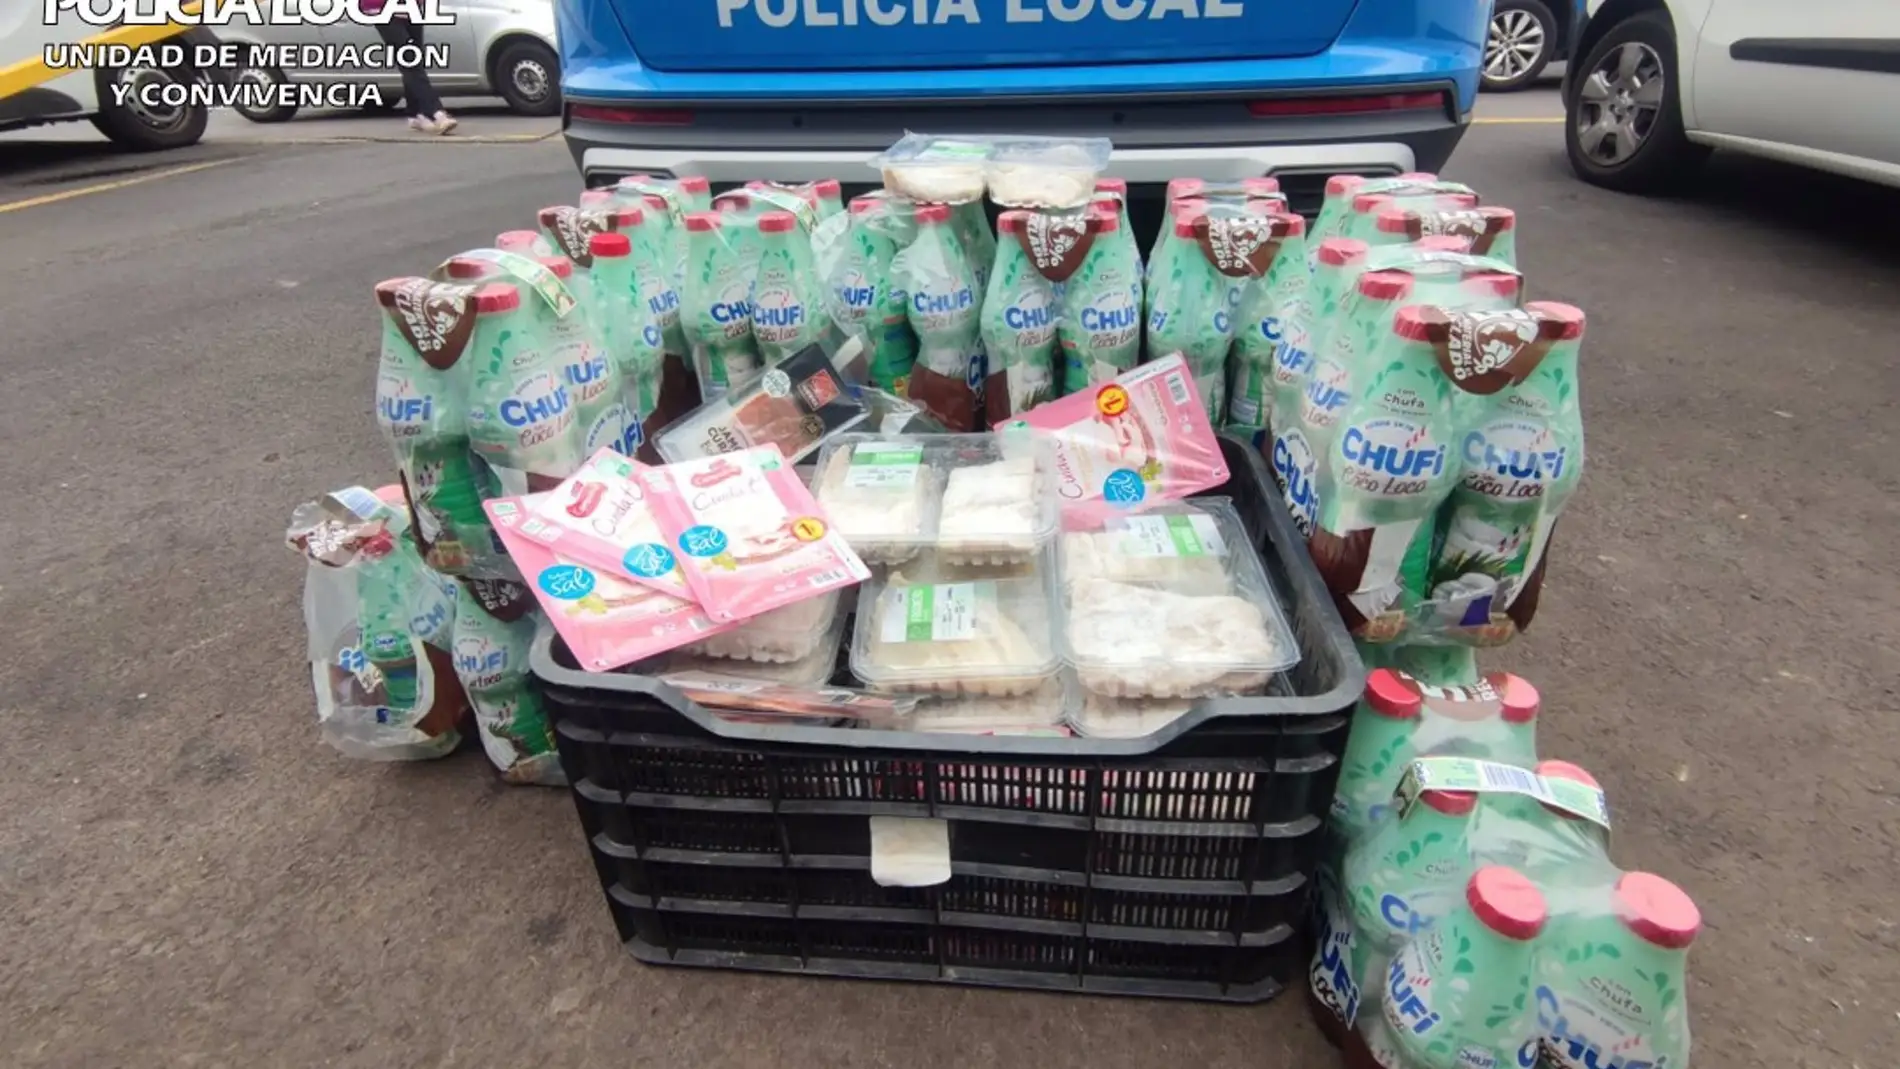 Imagen de los alimentos en mal estado incautados por la Policía Local de Las Palmas de Gran Canaria en una organización social que los repartía como ayuda 